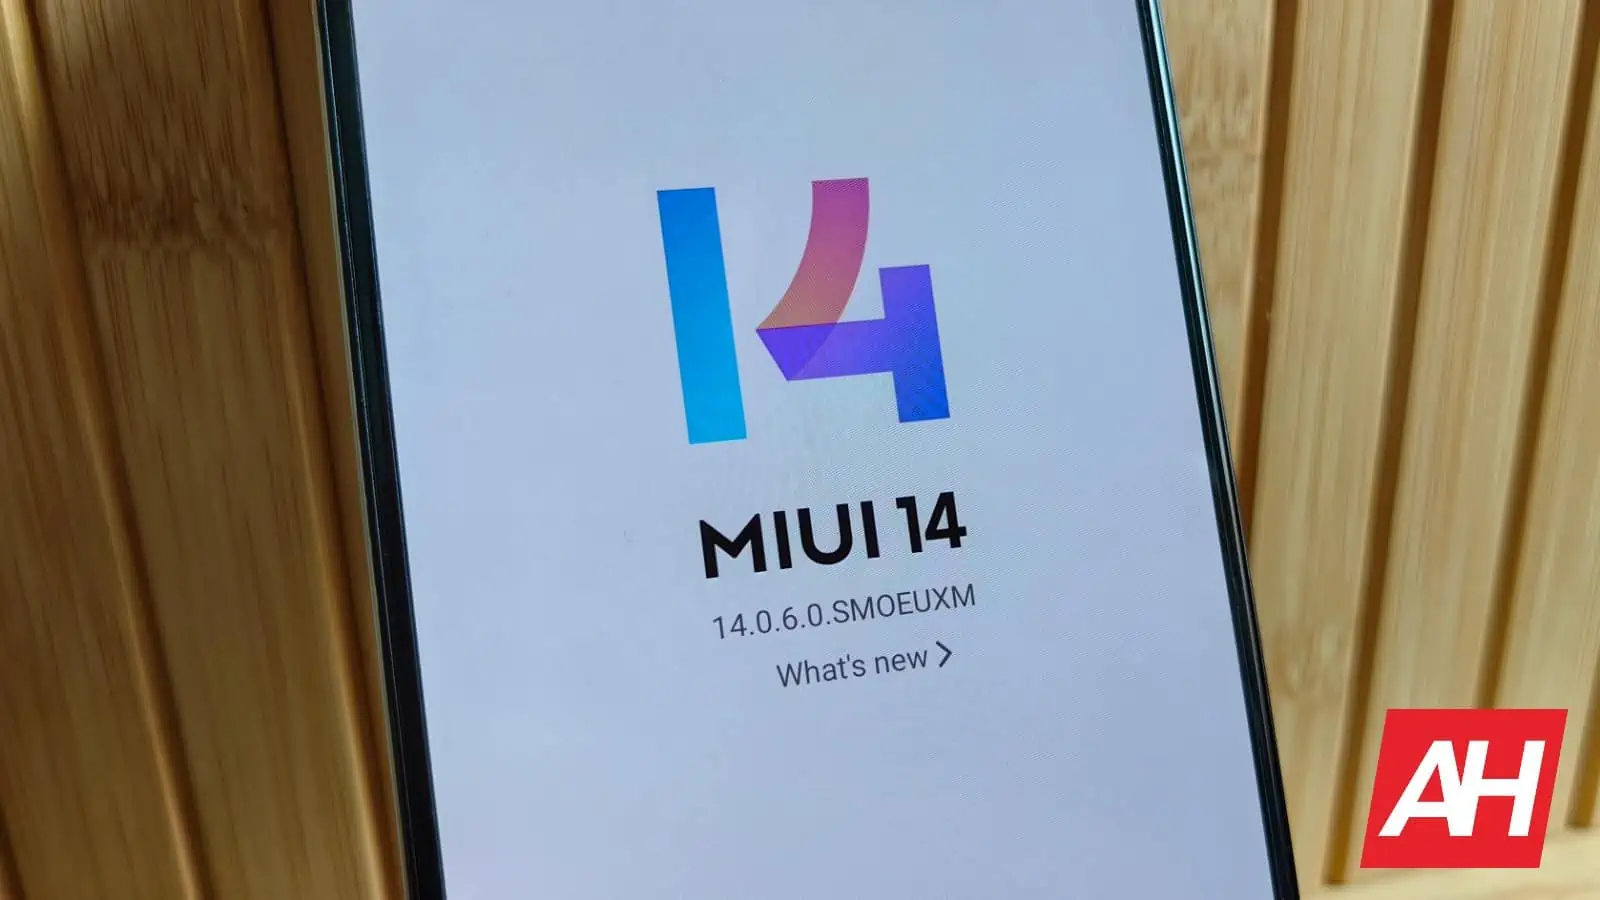 AH Xiaomi MIUI 14 logo image 2